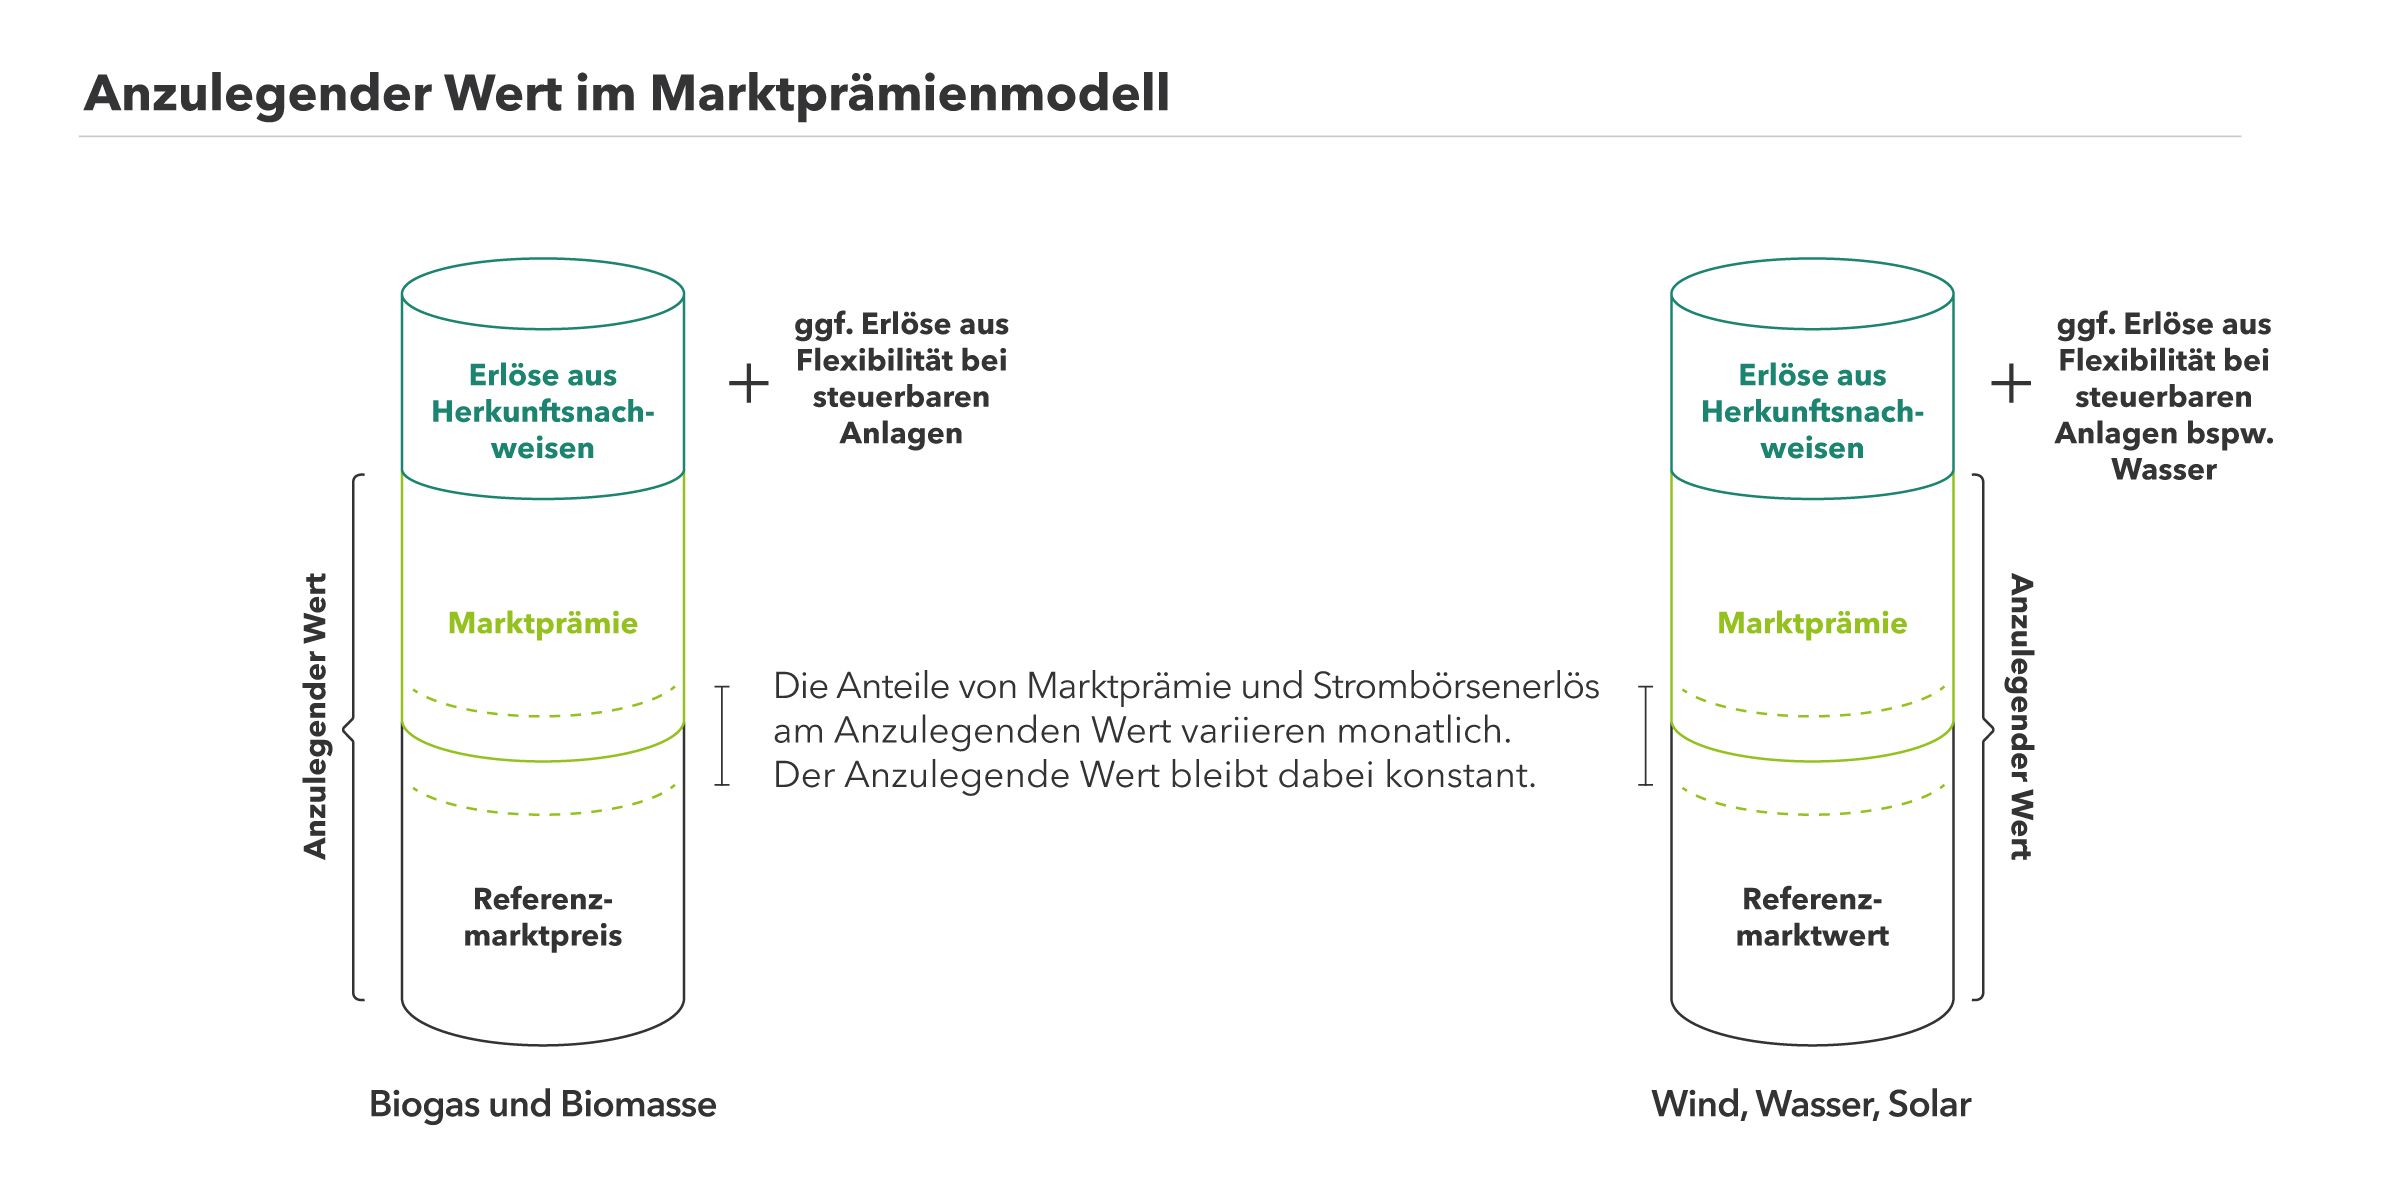 Berechnung des Anzulegenden Werts aus Marktprämie und Referenzmarktpreis, bzw. Referenzmarktwert in Österreich